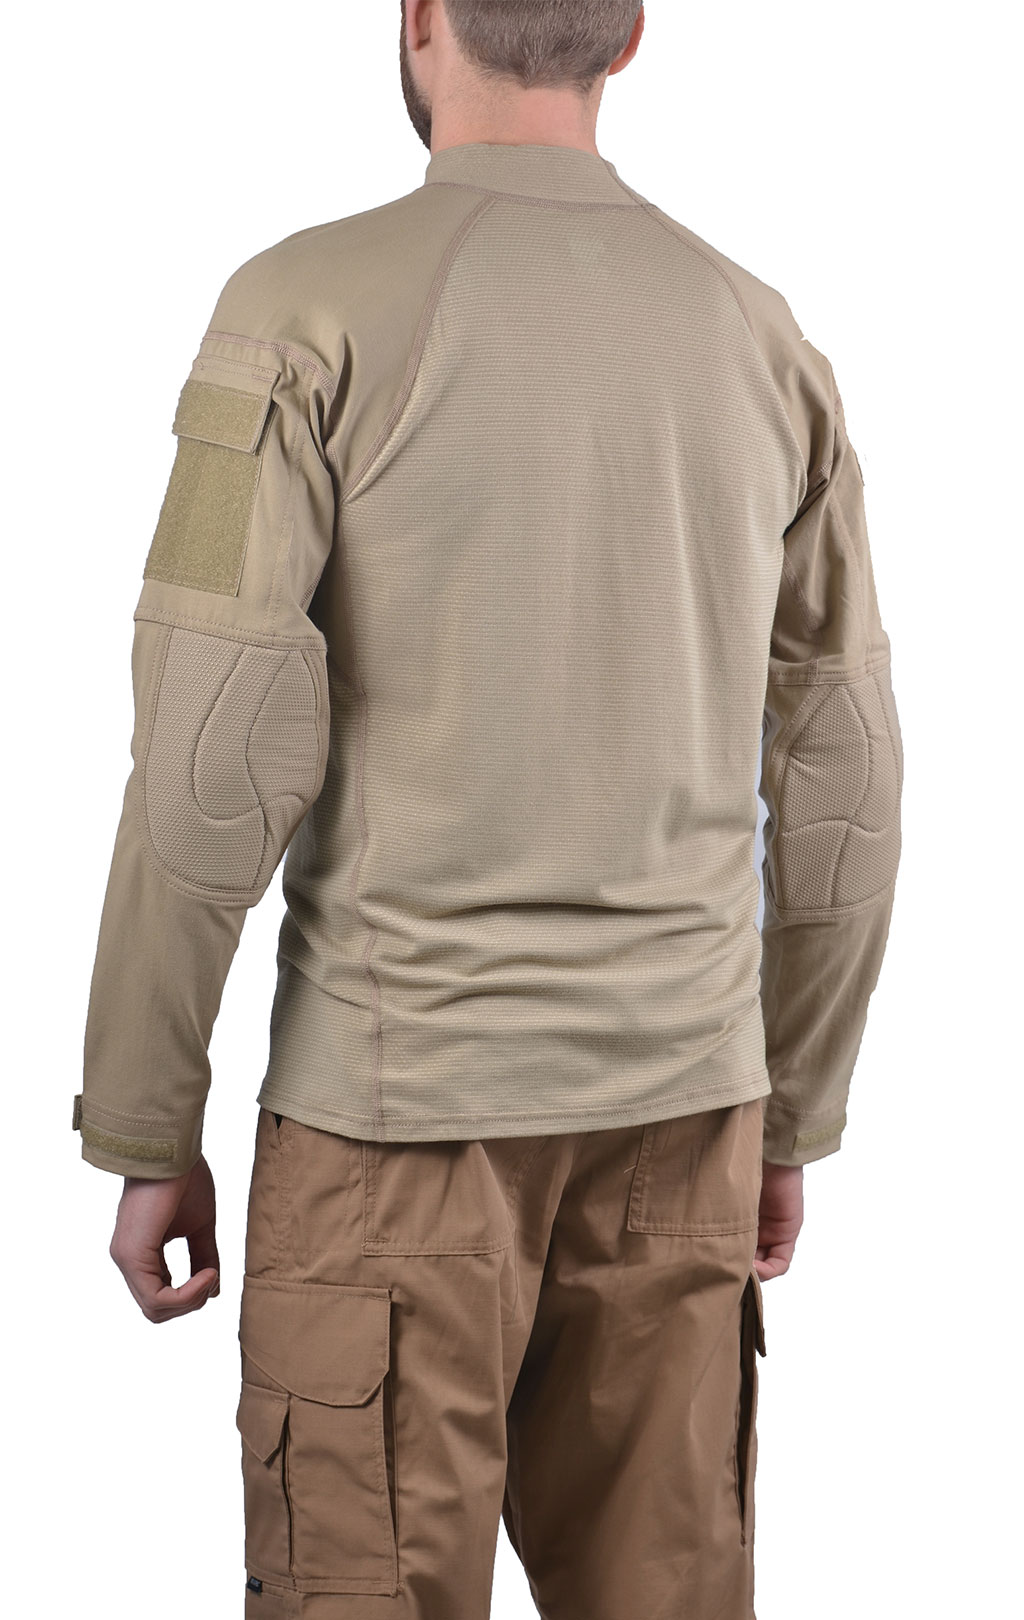 Рубашка Combat Shirt khaki США